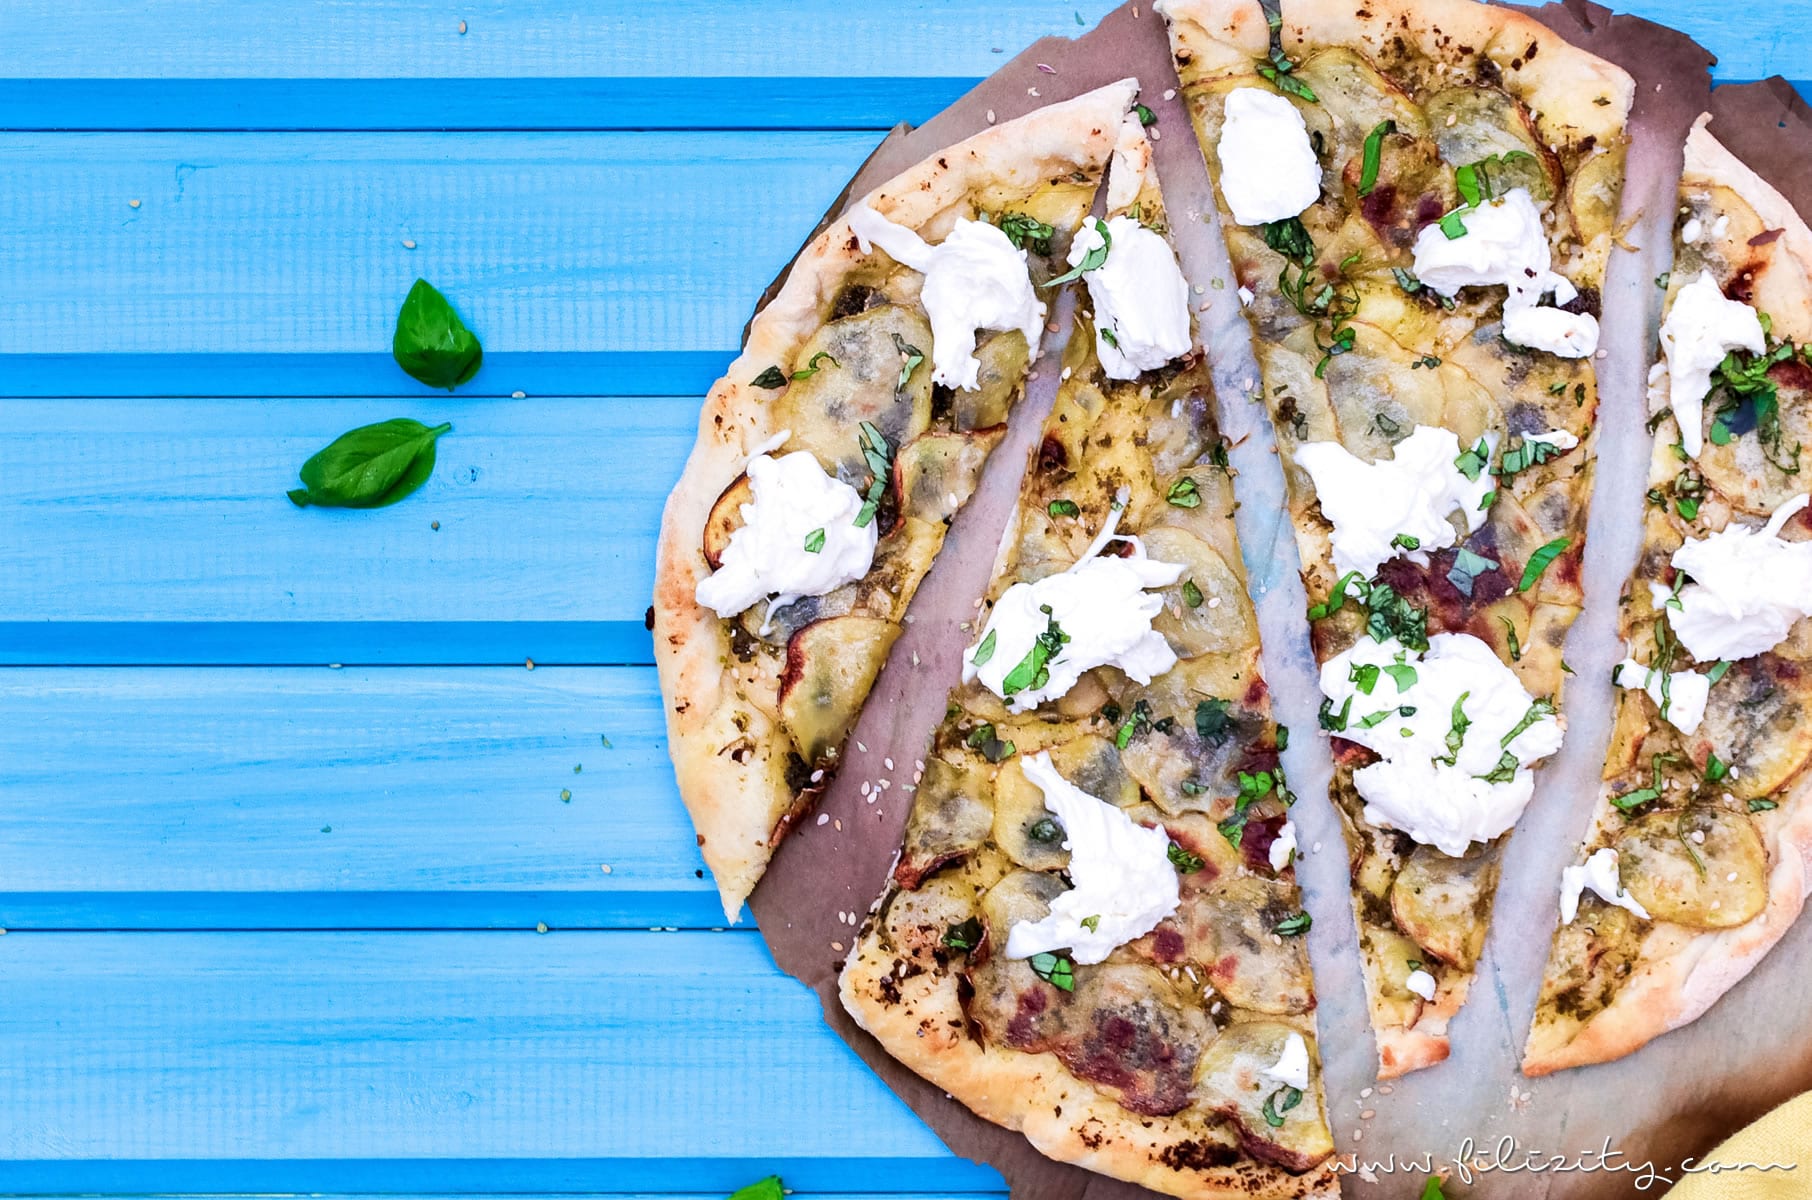 Kartoffel-Pizza mit Pesto - Mein bestes Rezept (auch vegan) | Filizity.com | Food-Blog aus dem Rheinland #pizza #veggie